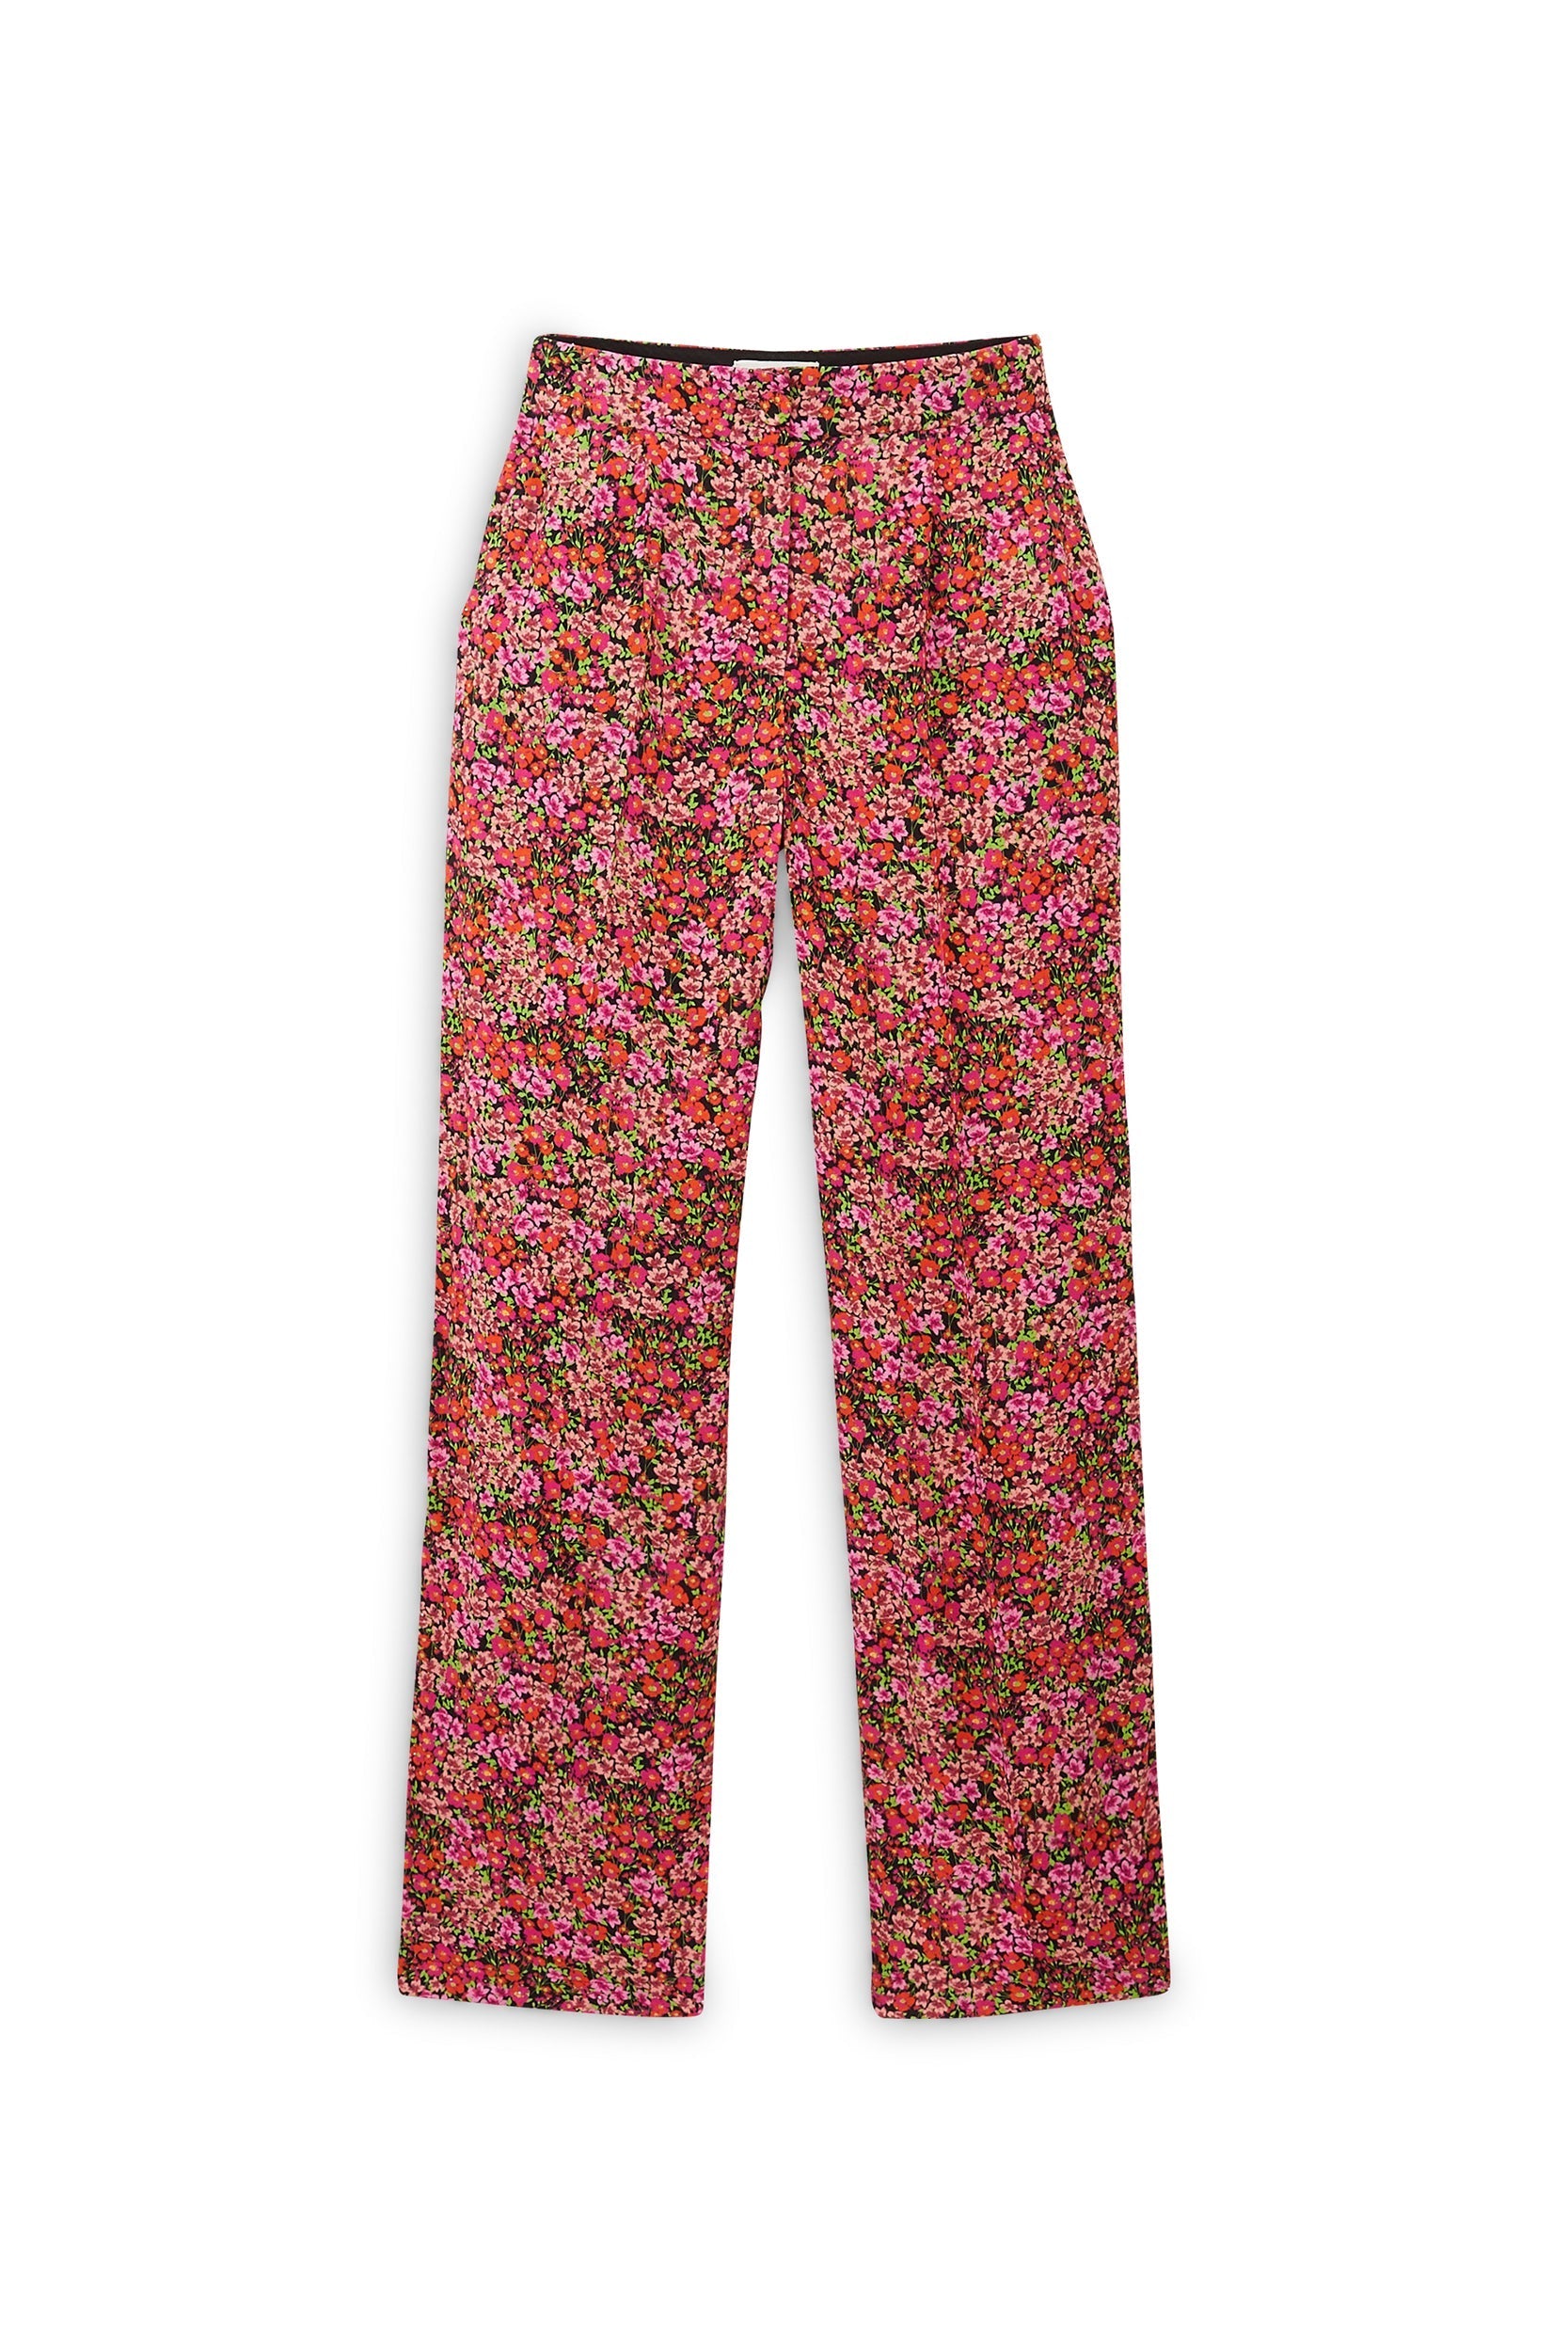 Pantalon Libre imprimé fleurs des champs